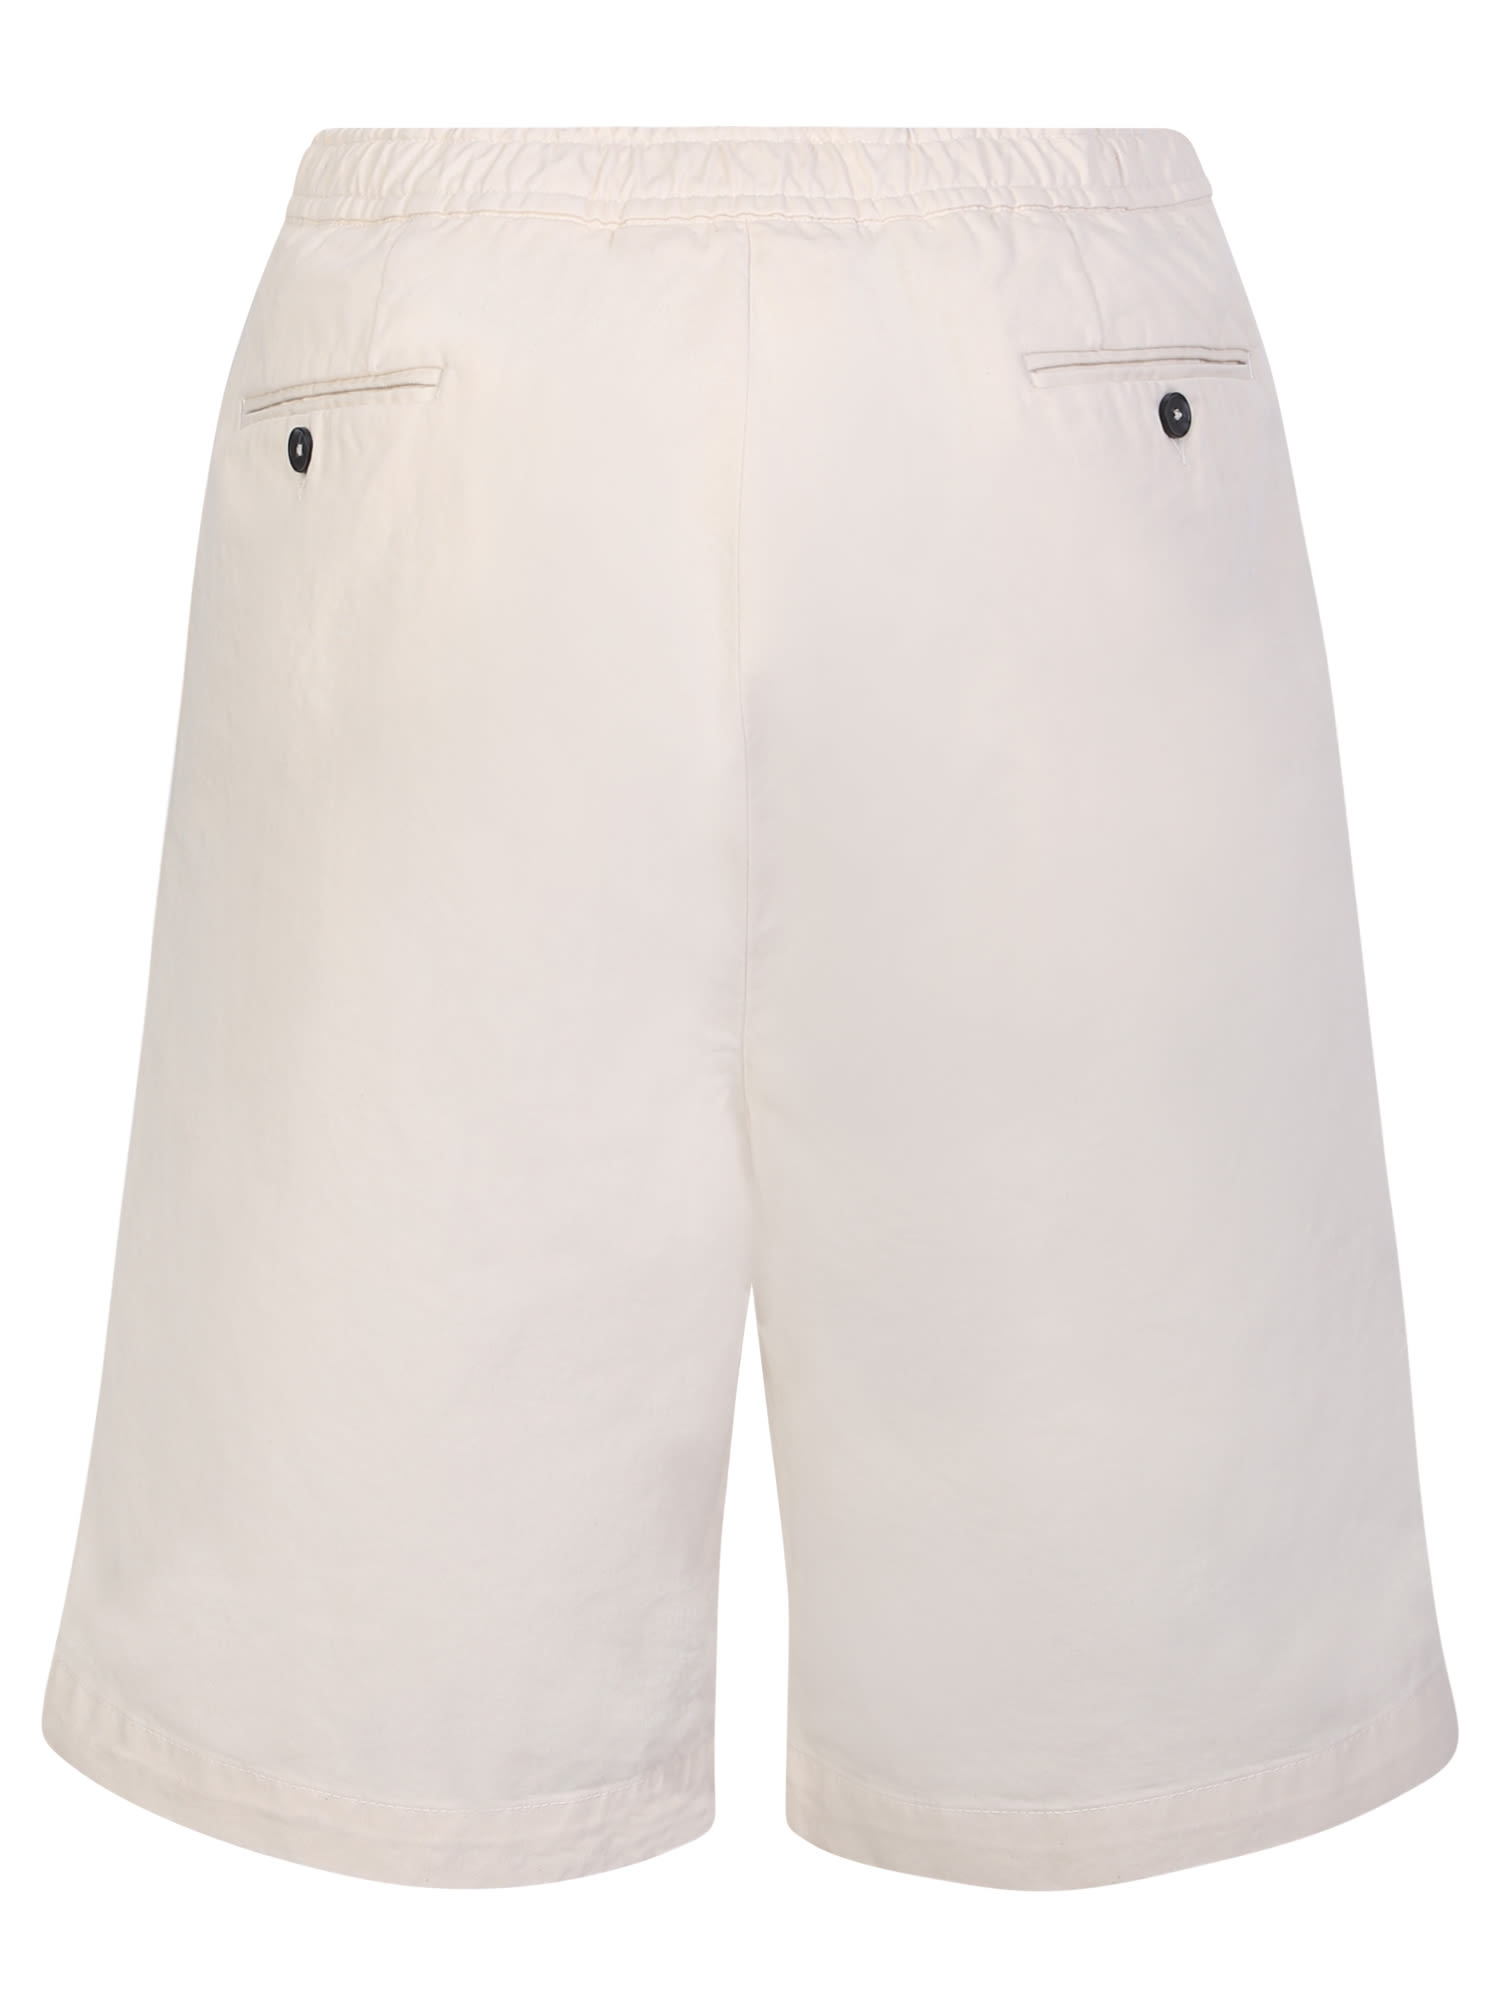 Shop Officine Generale Light Beige Cotton Shorts